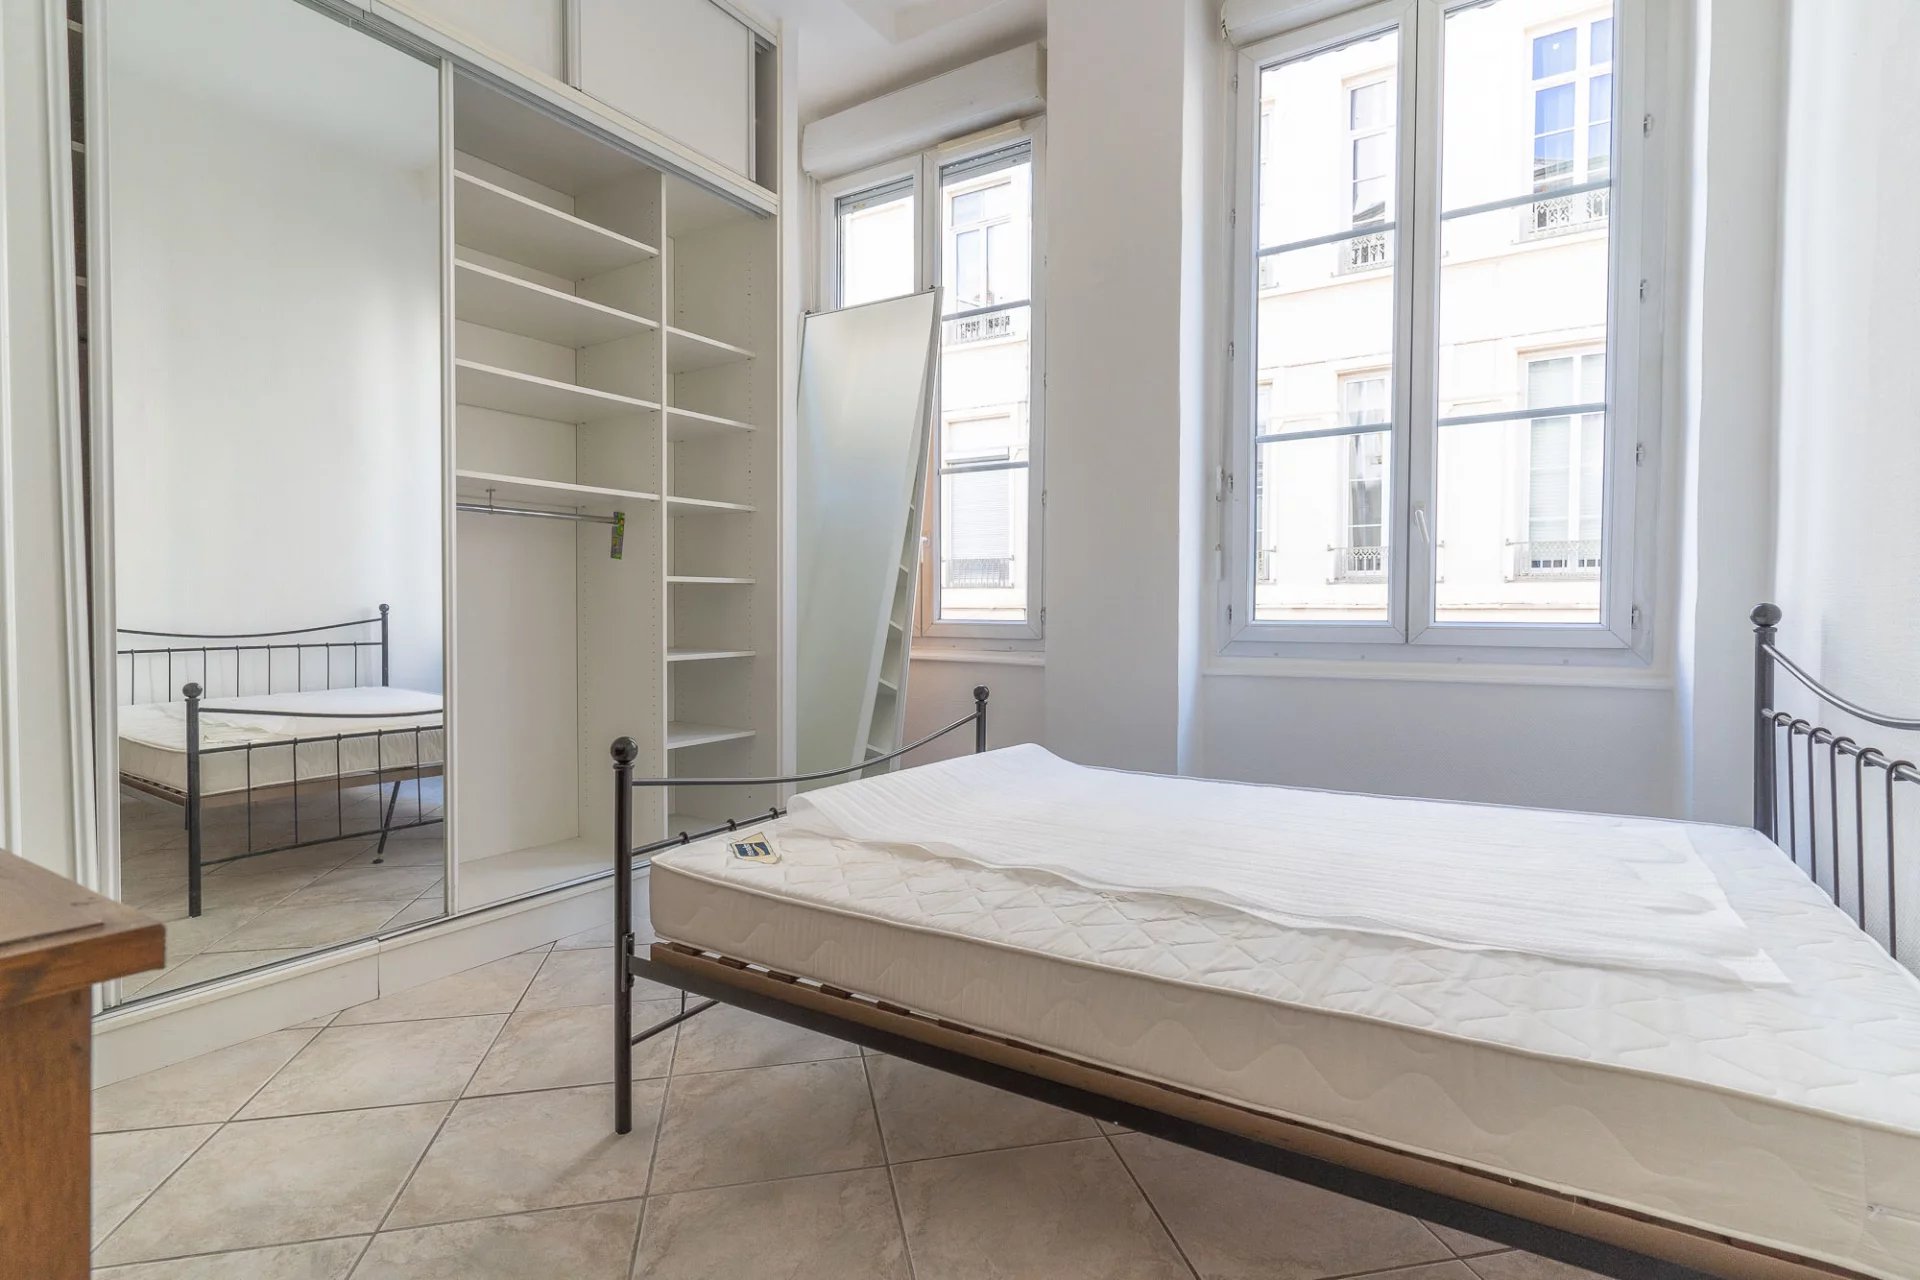 Sale Apartment - Lyon 6ème Les Brotteaux